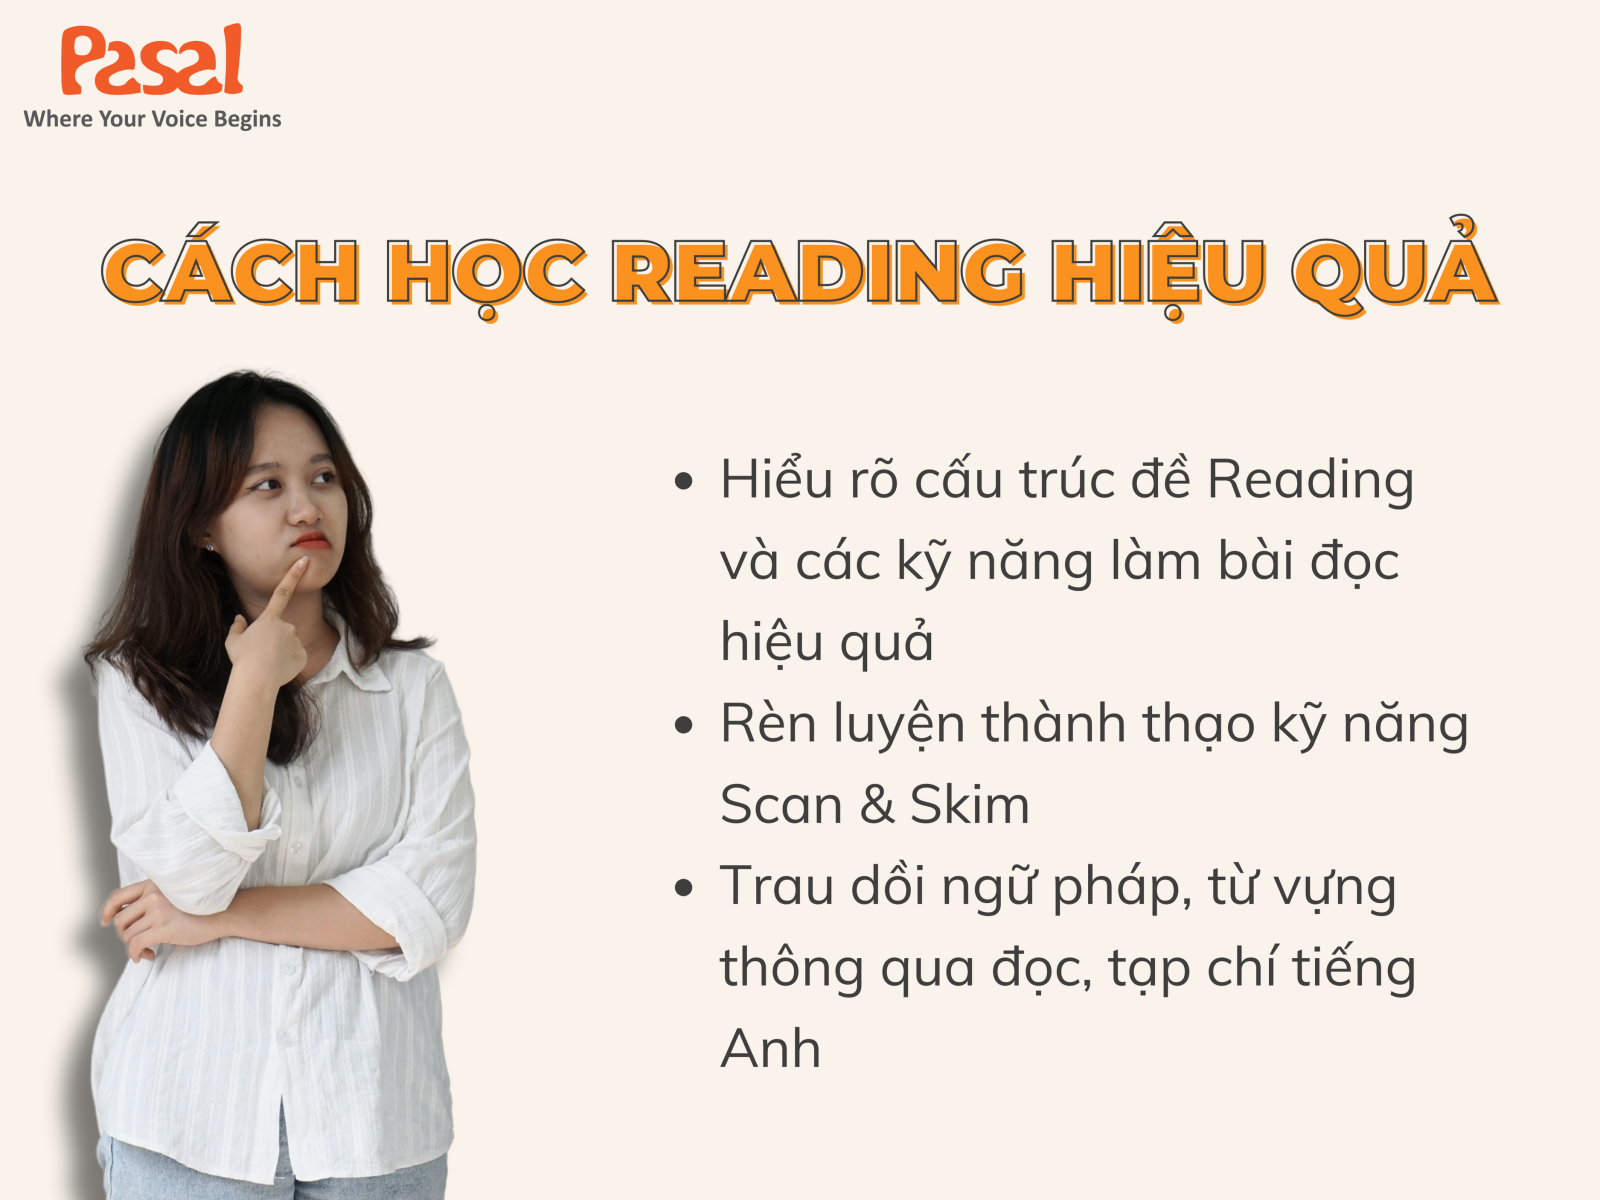 Cách học Reading hiệu quả